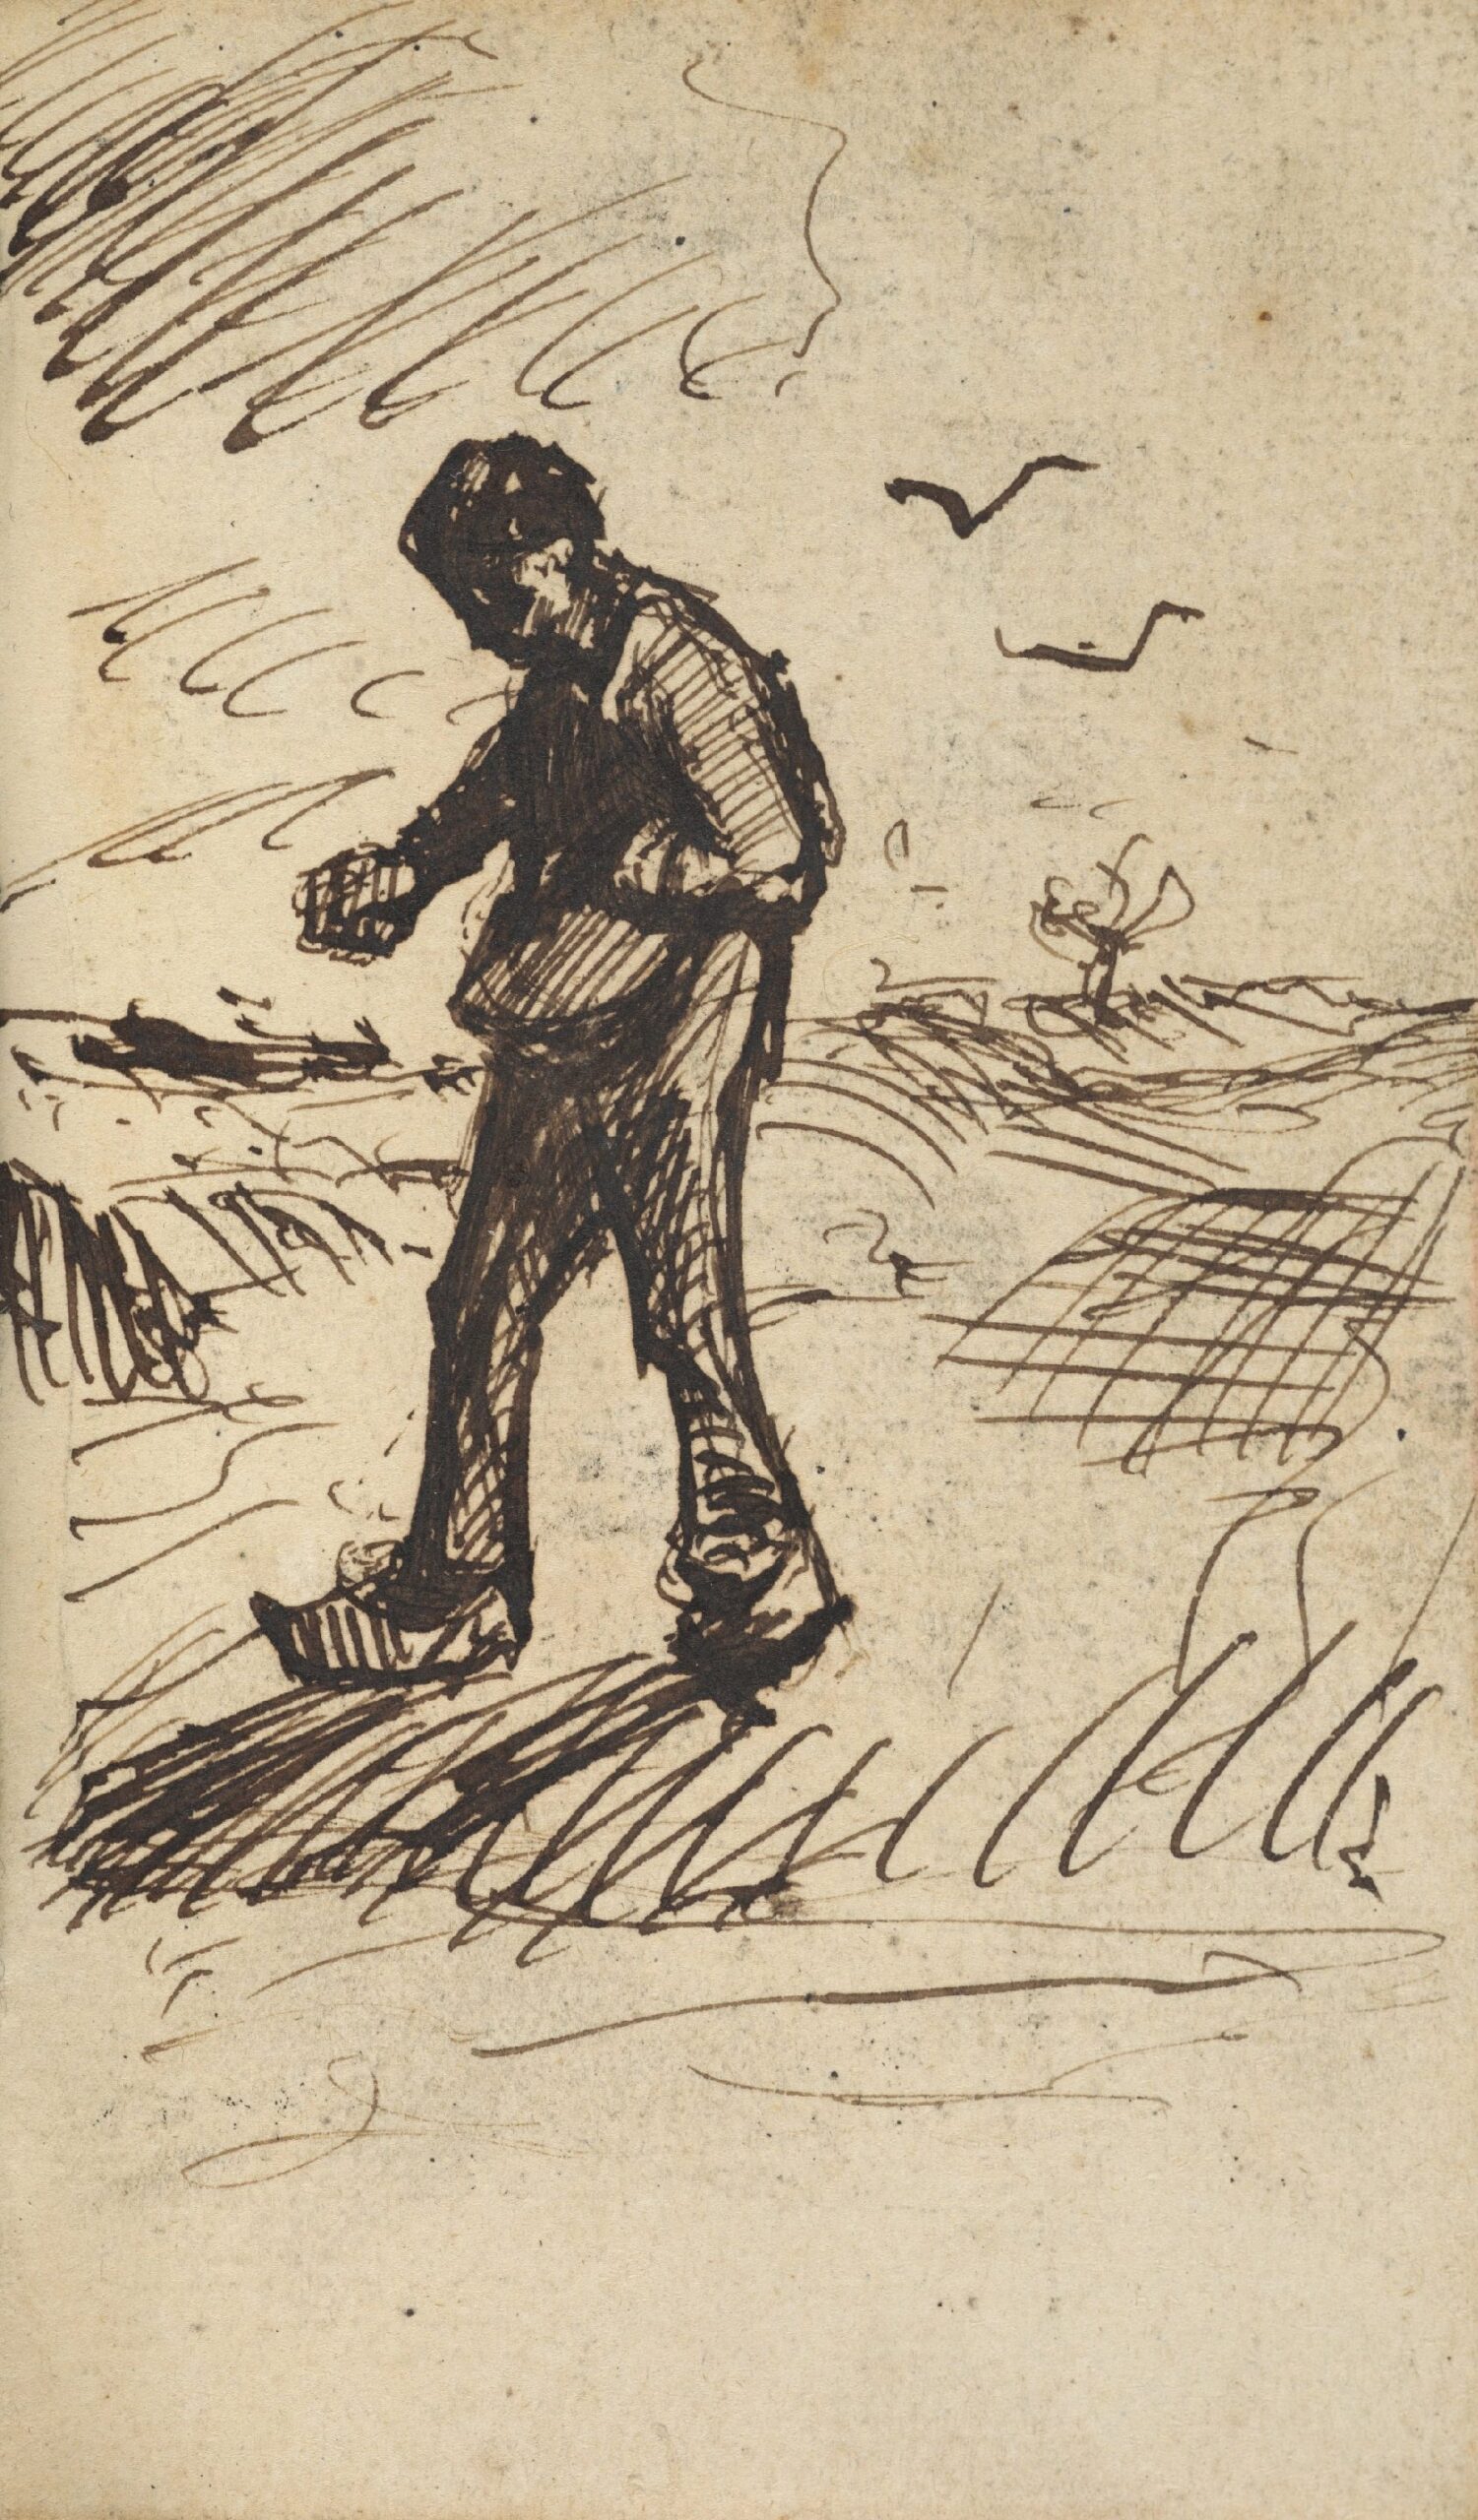 Zaaier Vincent van Gogh (1853 - 1890), Nuenen, november 1884-september 1885